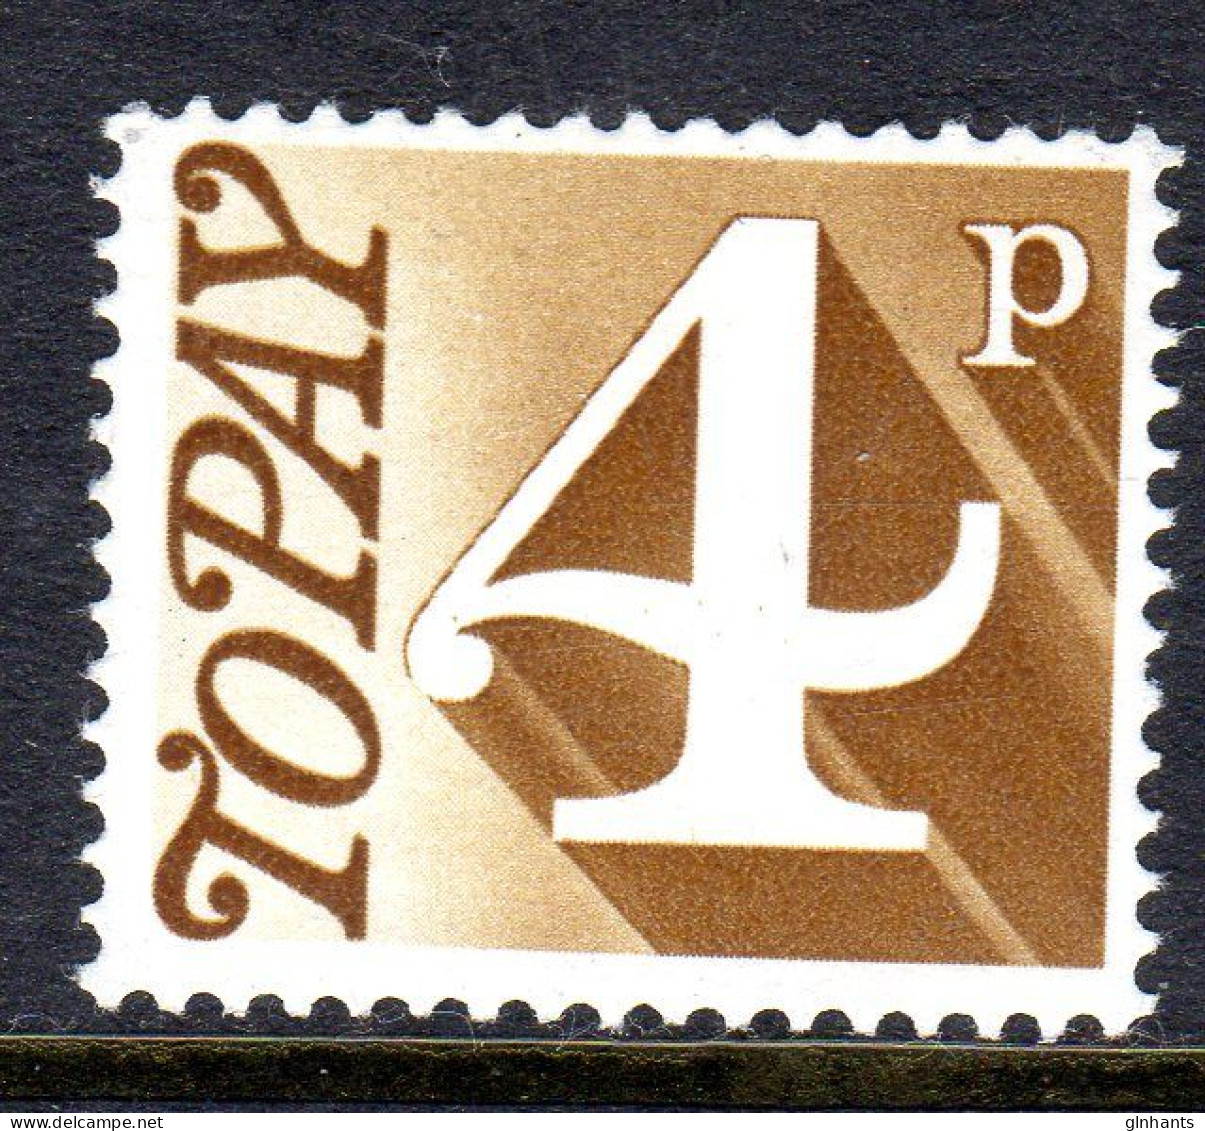 GREAT BRITAIN GB - 1970 POSTAGE DUE 4p STAMP FINE MNH ** SG D81 - Portomarken